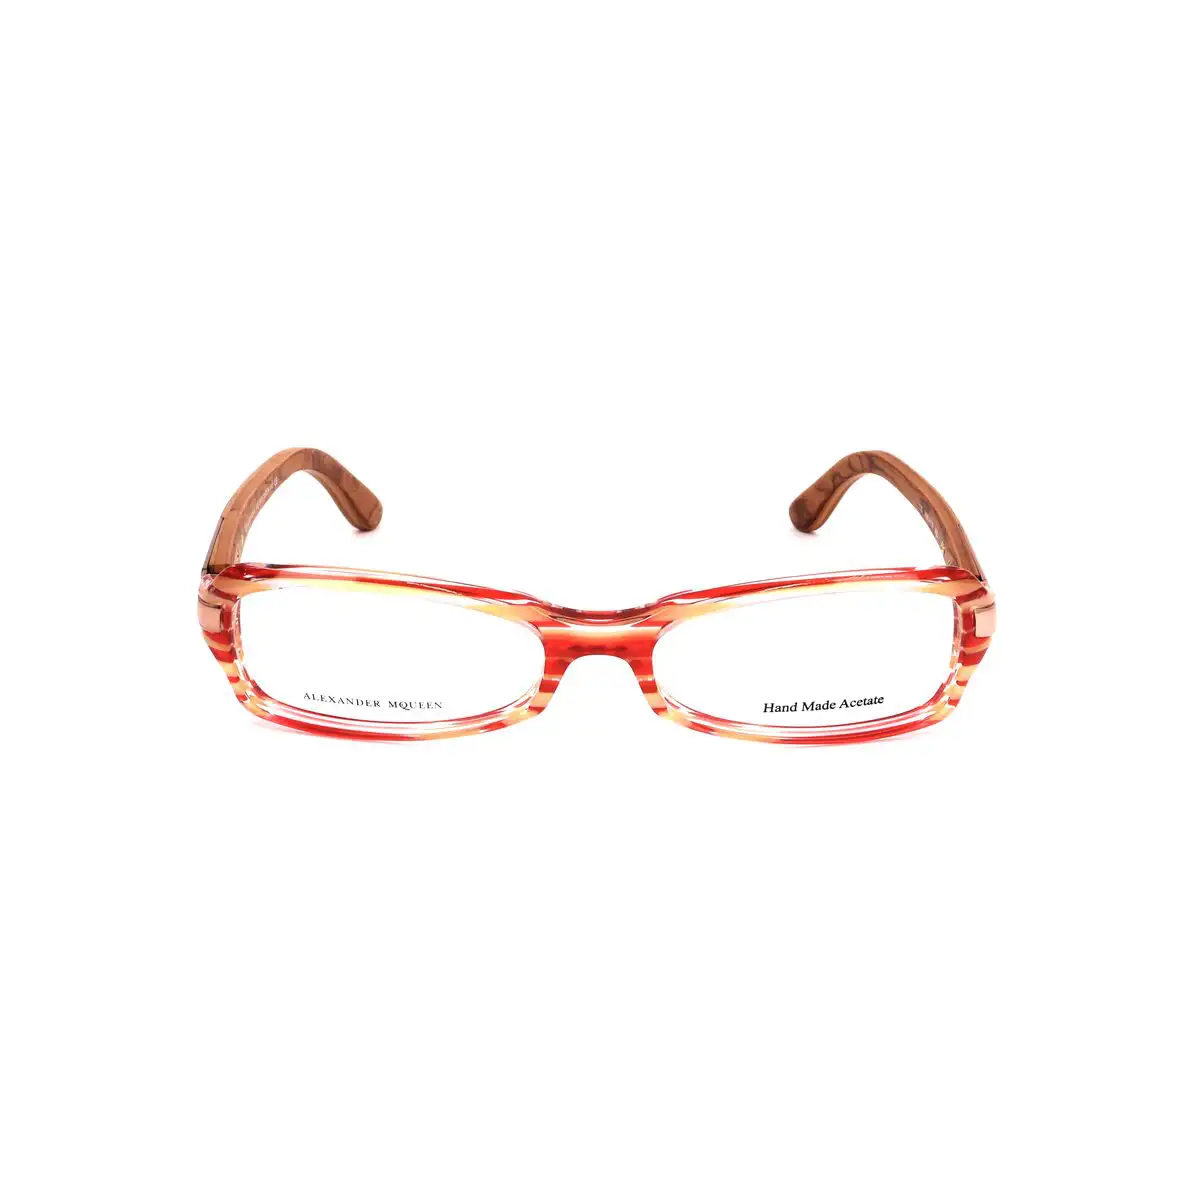 Monture de lunettes femme alexander mcqueen amq 4136 a0o rouge_3618. DIAYTAR SENEGAL - L'Essence de la Tradition et de la Modernité réunies. Explorez notre plateforme en ligne pour trouver des produits authentiques du Sénégal, tout en découvrant les dernières tendances du monde moderne.